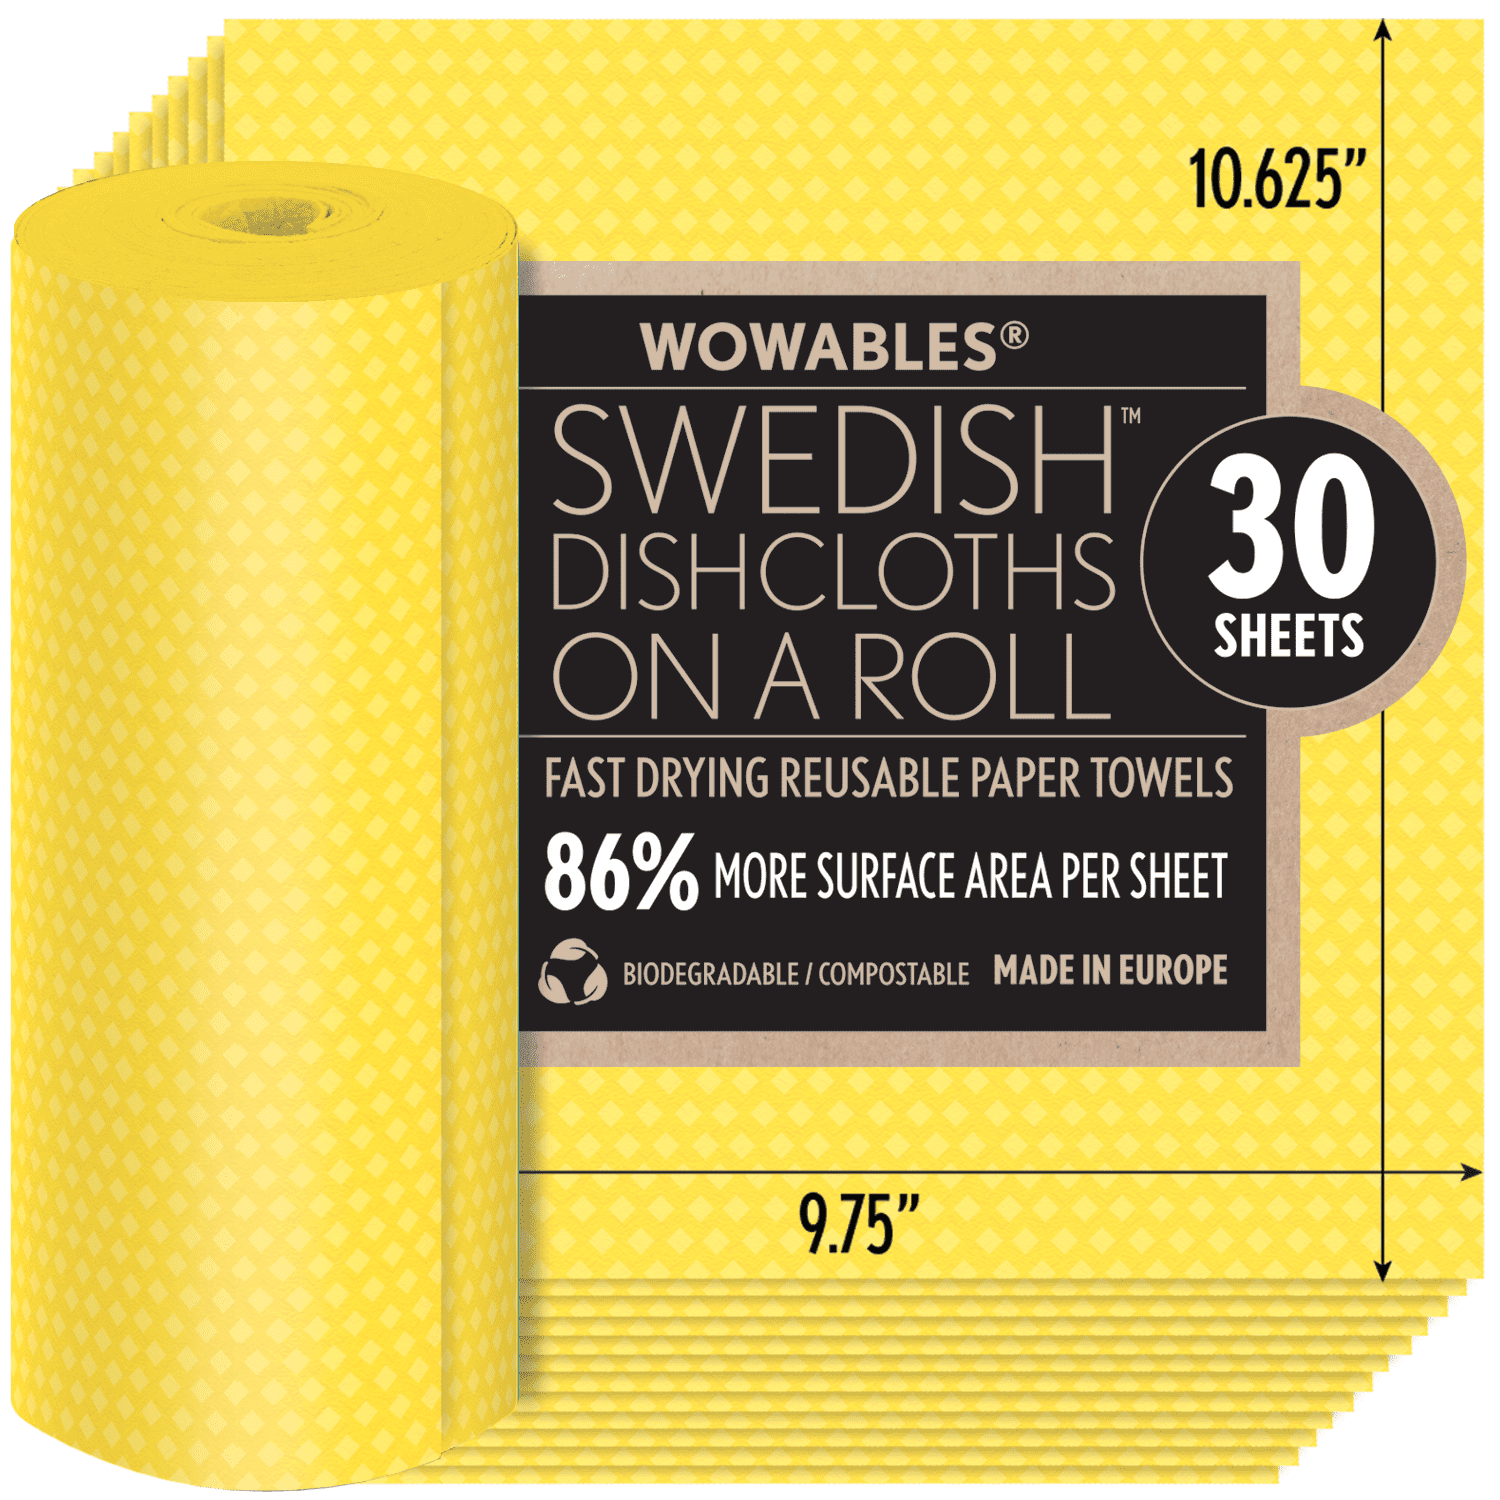 LOLA Wowables Swedish Dish Cloths, Reusable & Biodegradable 30